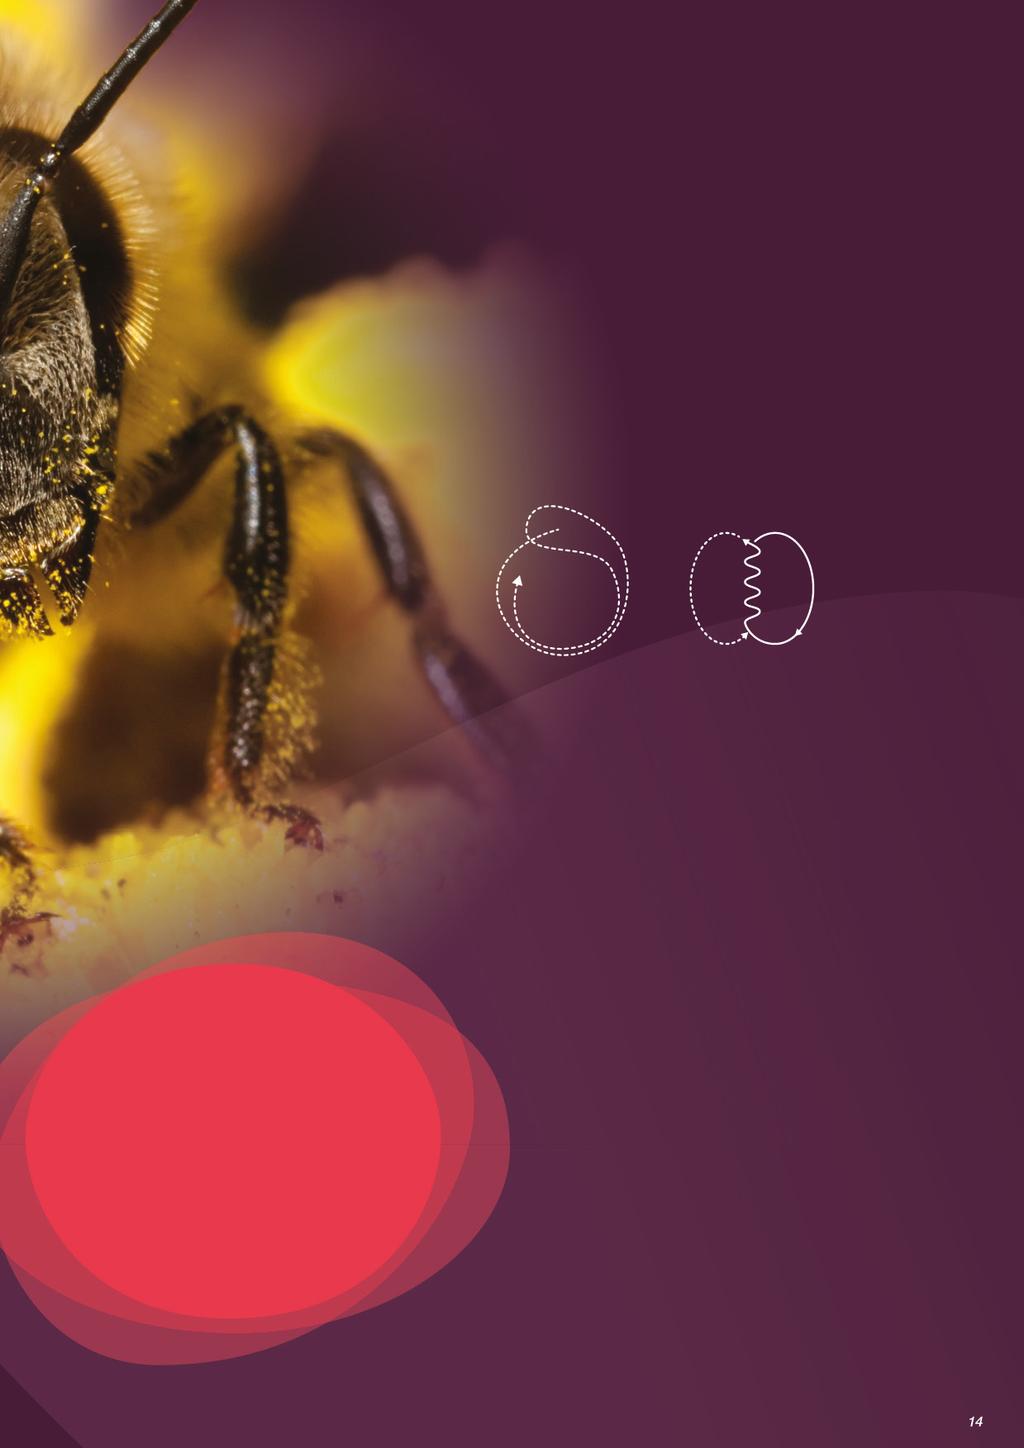 További érdekességek a háziméhekről Fantasztikus szaglás A háziméhek egyedi illat alapján ismerik fel saját kolóniájukat.